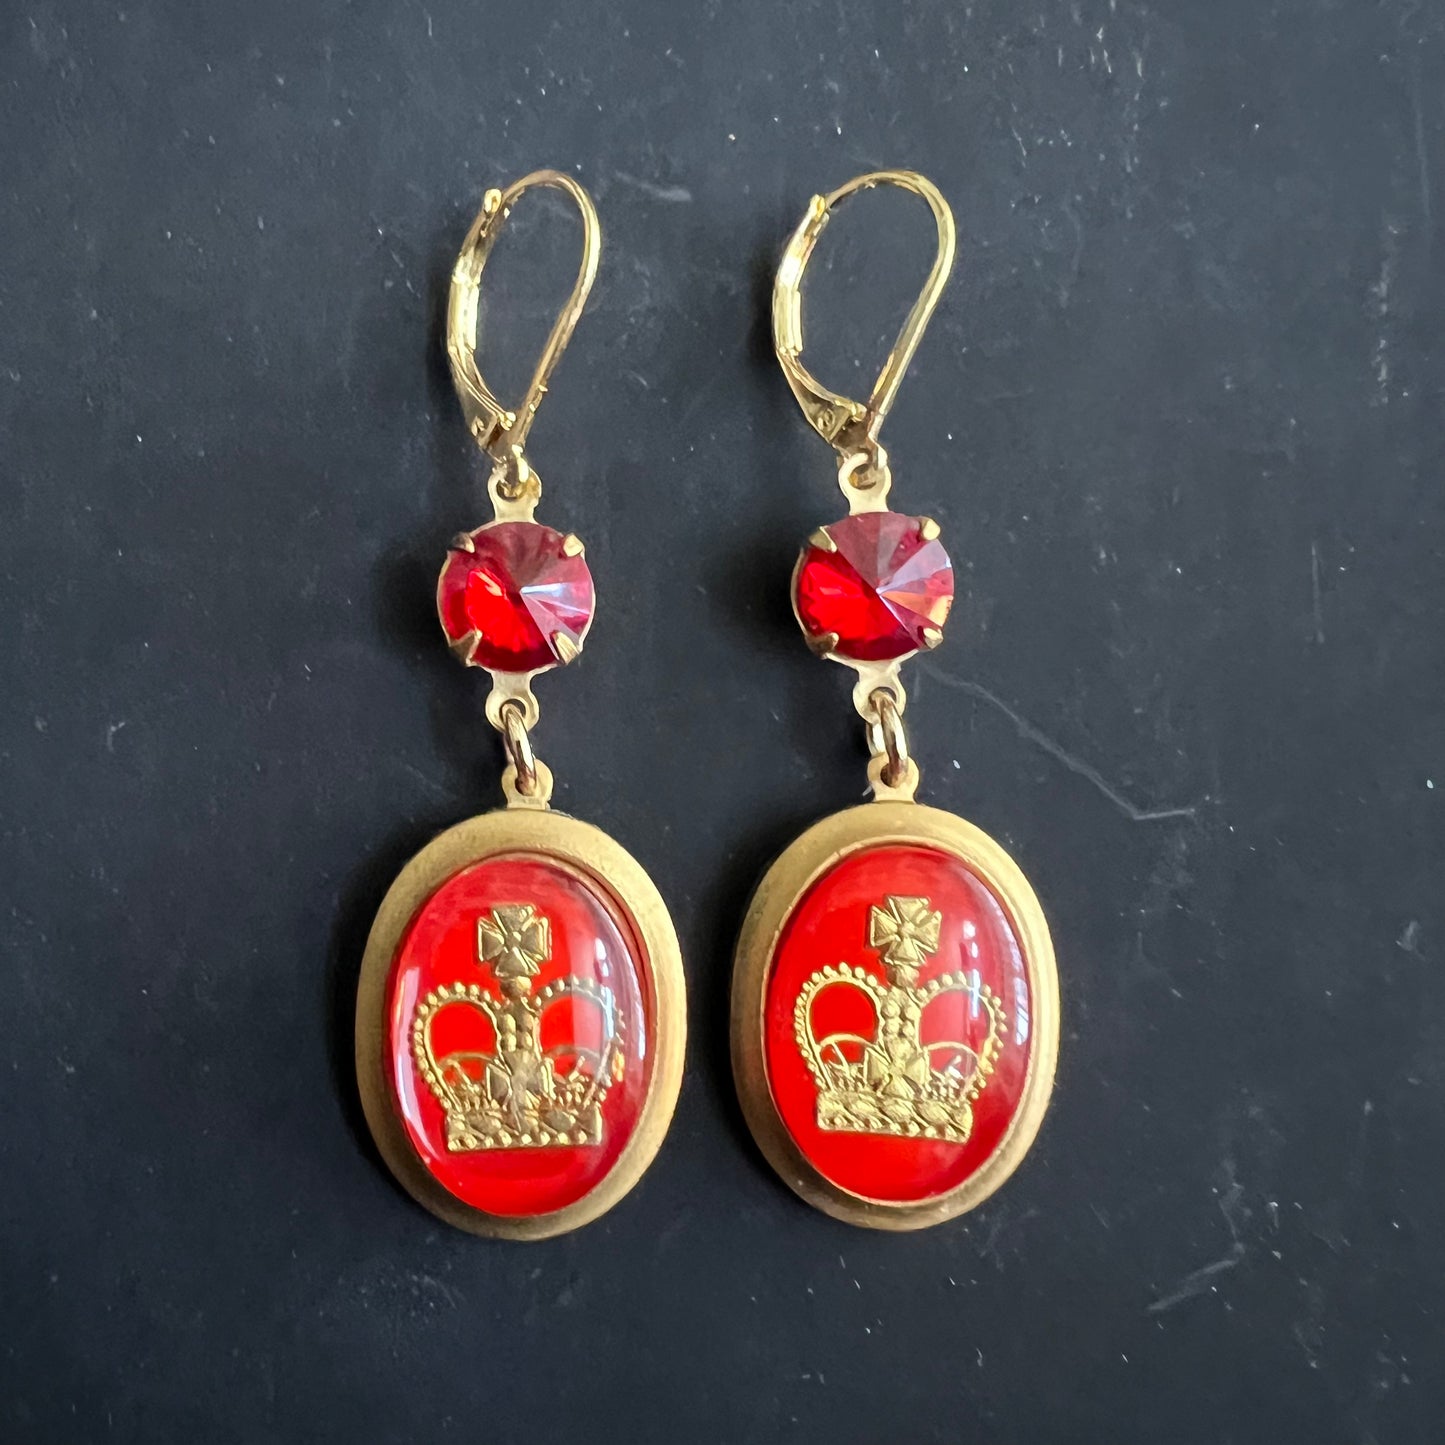 Regal Red Crown Earrings